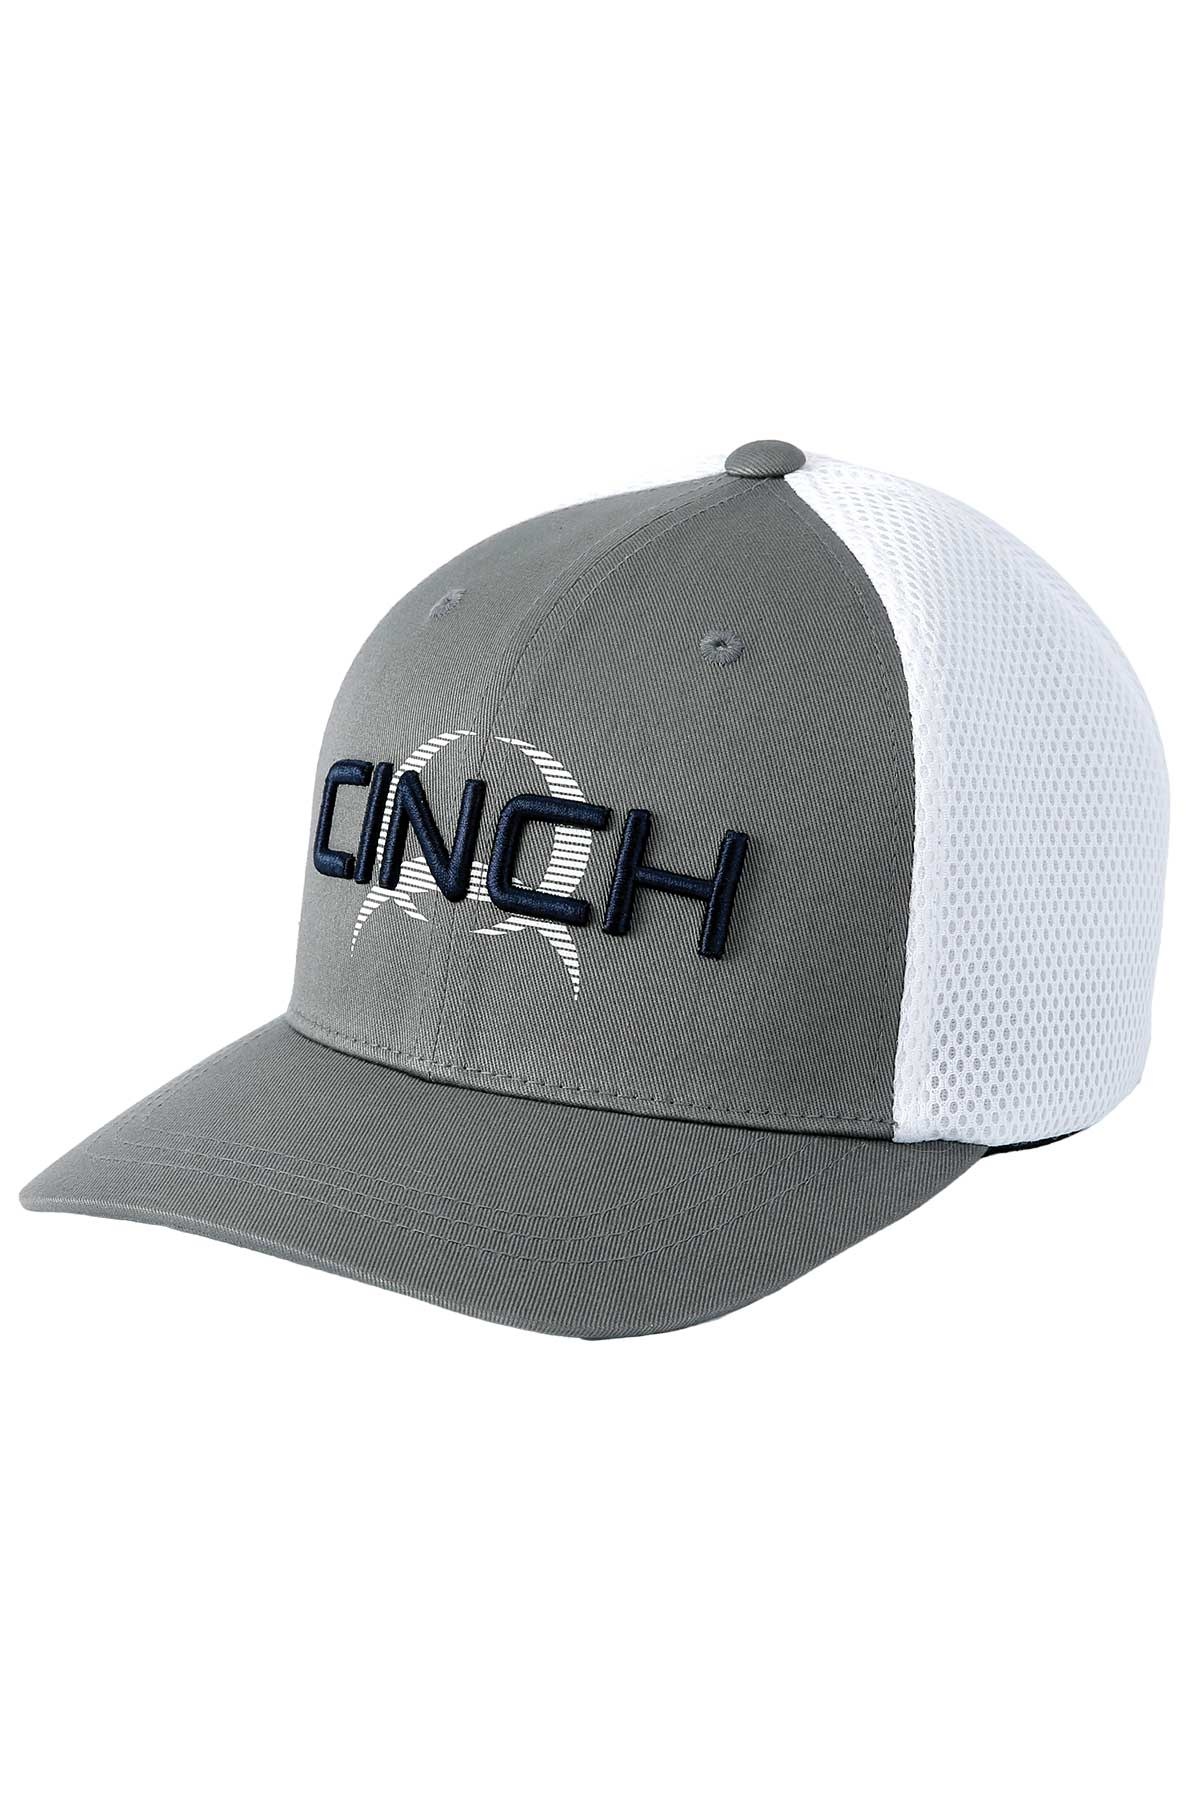 CINCH GRAY FLEXFIT CAP MCC0653311 - Corral Western Wear | Flex Caps